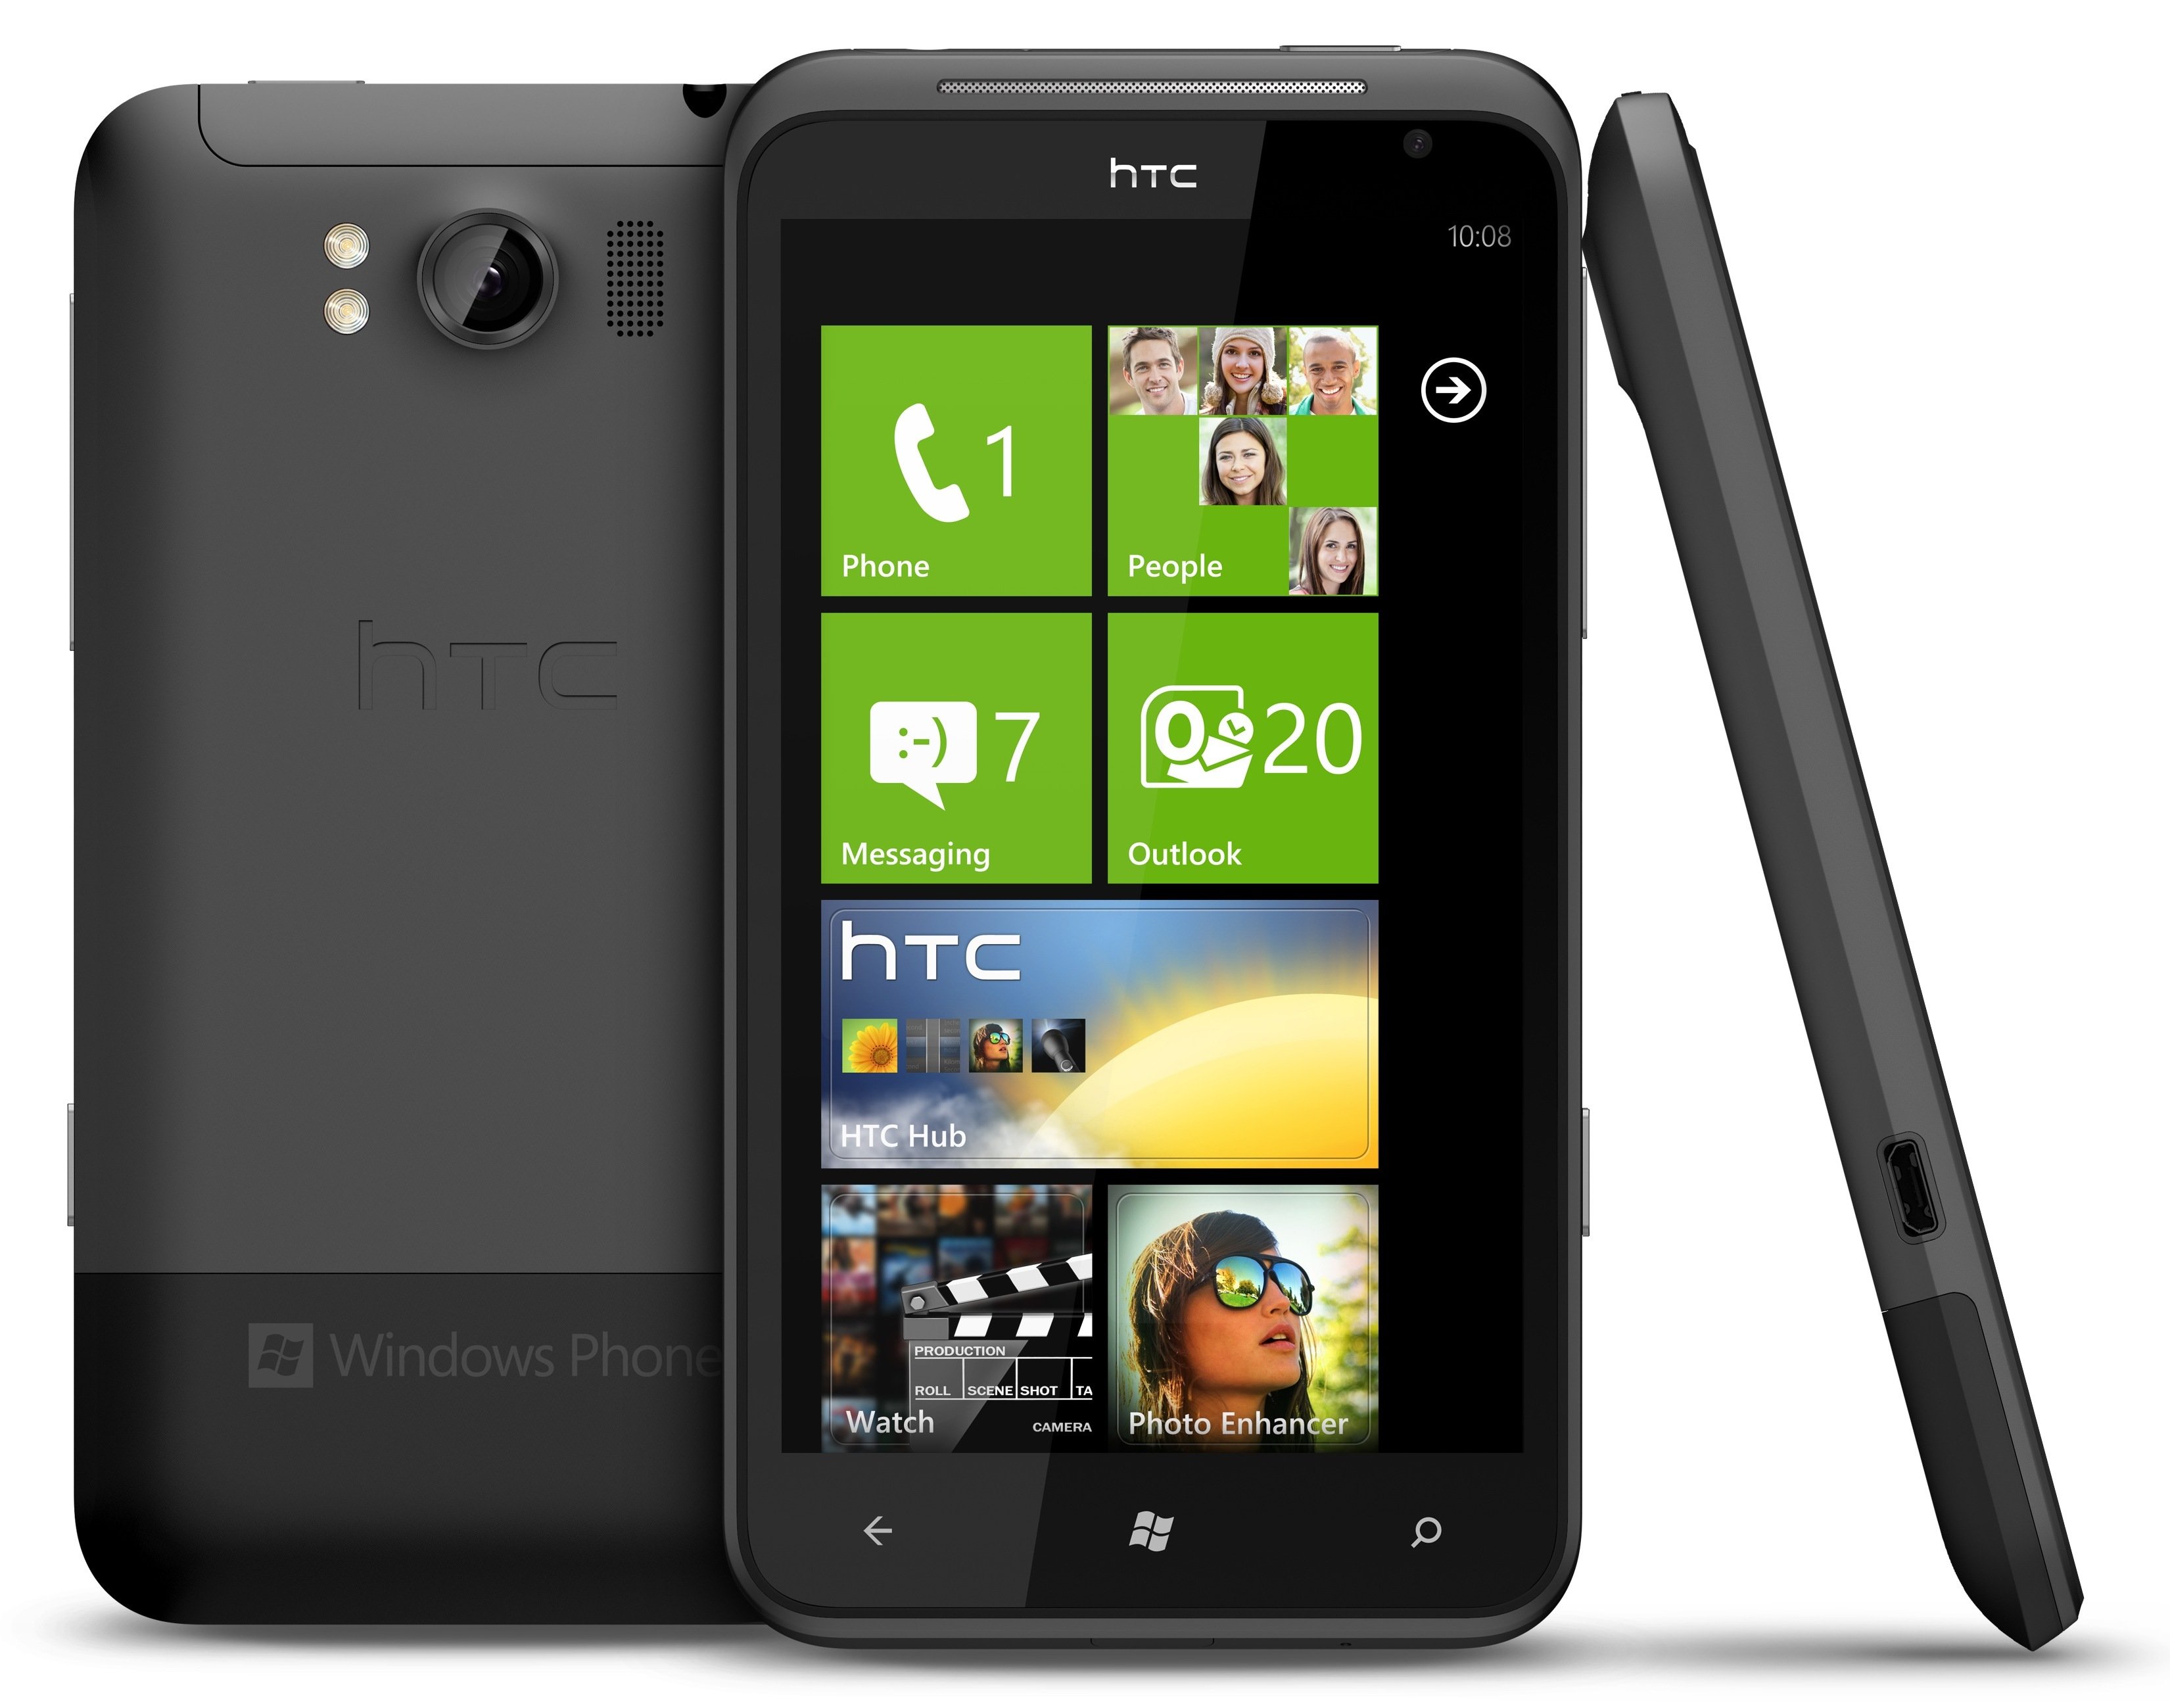 HTC Titan.